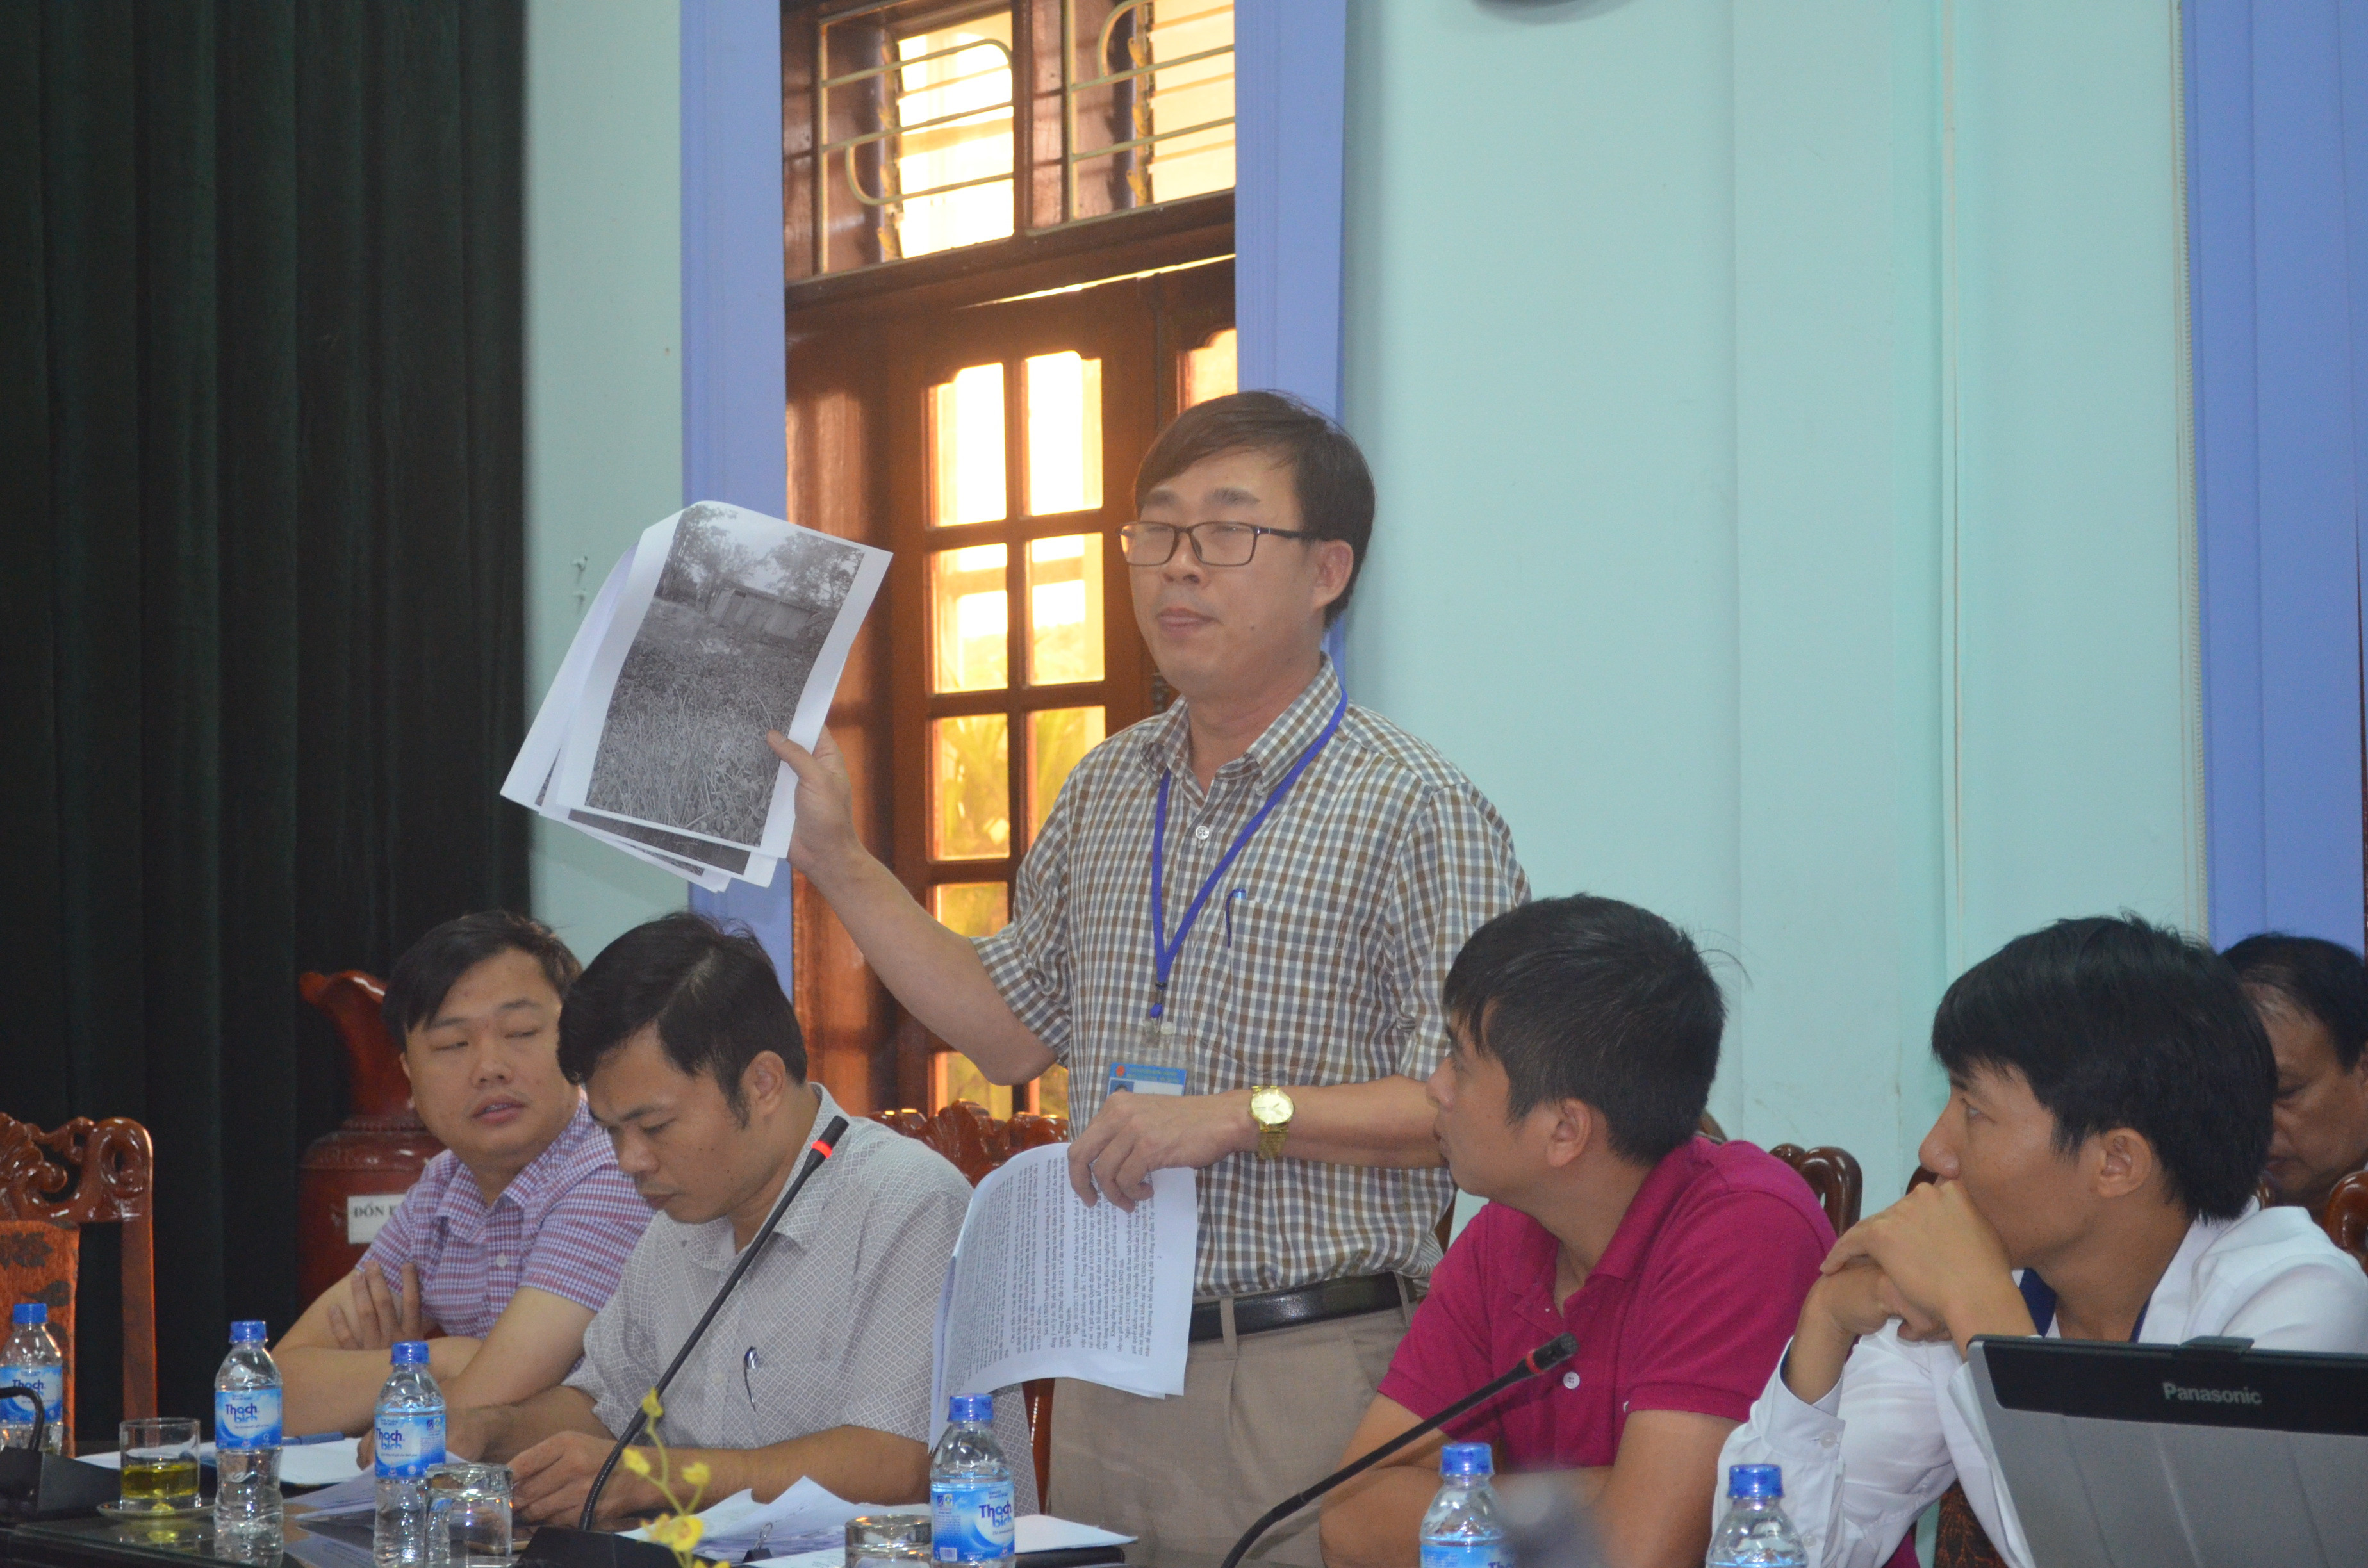 Trưởng phòng TN&MT huyện Hưng Nguyên, ông Nguyễn Hữu Hà đưa ra những hình ảnh để chứng minh khu vực đất mà bà Nguyễn Thị Huyền đòi hỏi nhà nước phải bồi thường là đất hoang